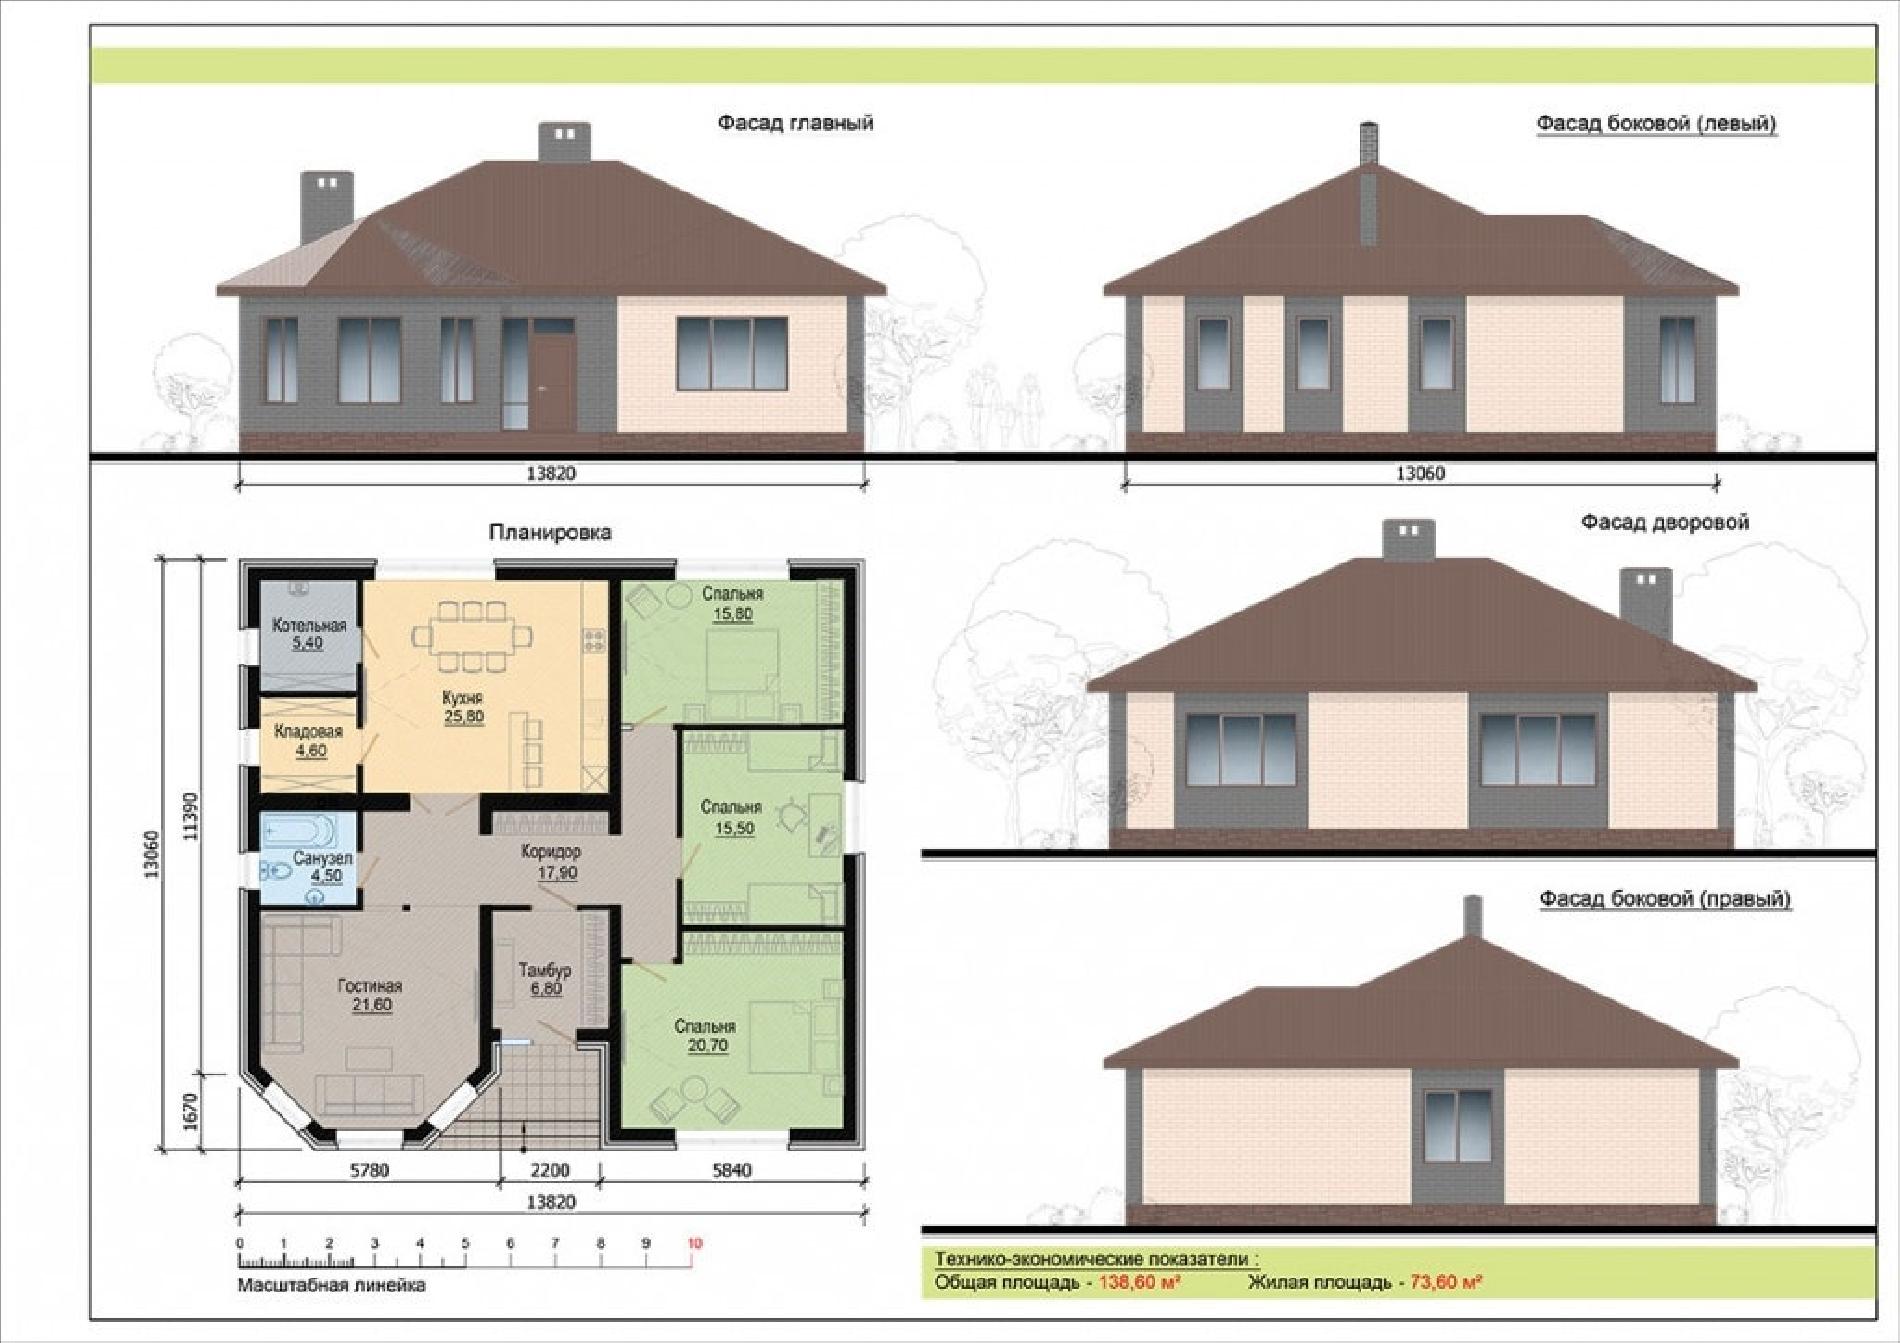 Планировка проекта дома №tr-139 tr-139_f1-min.jpg